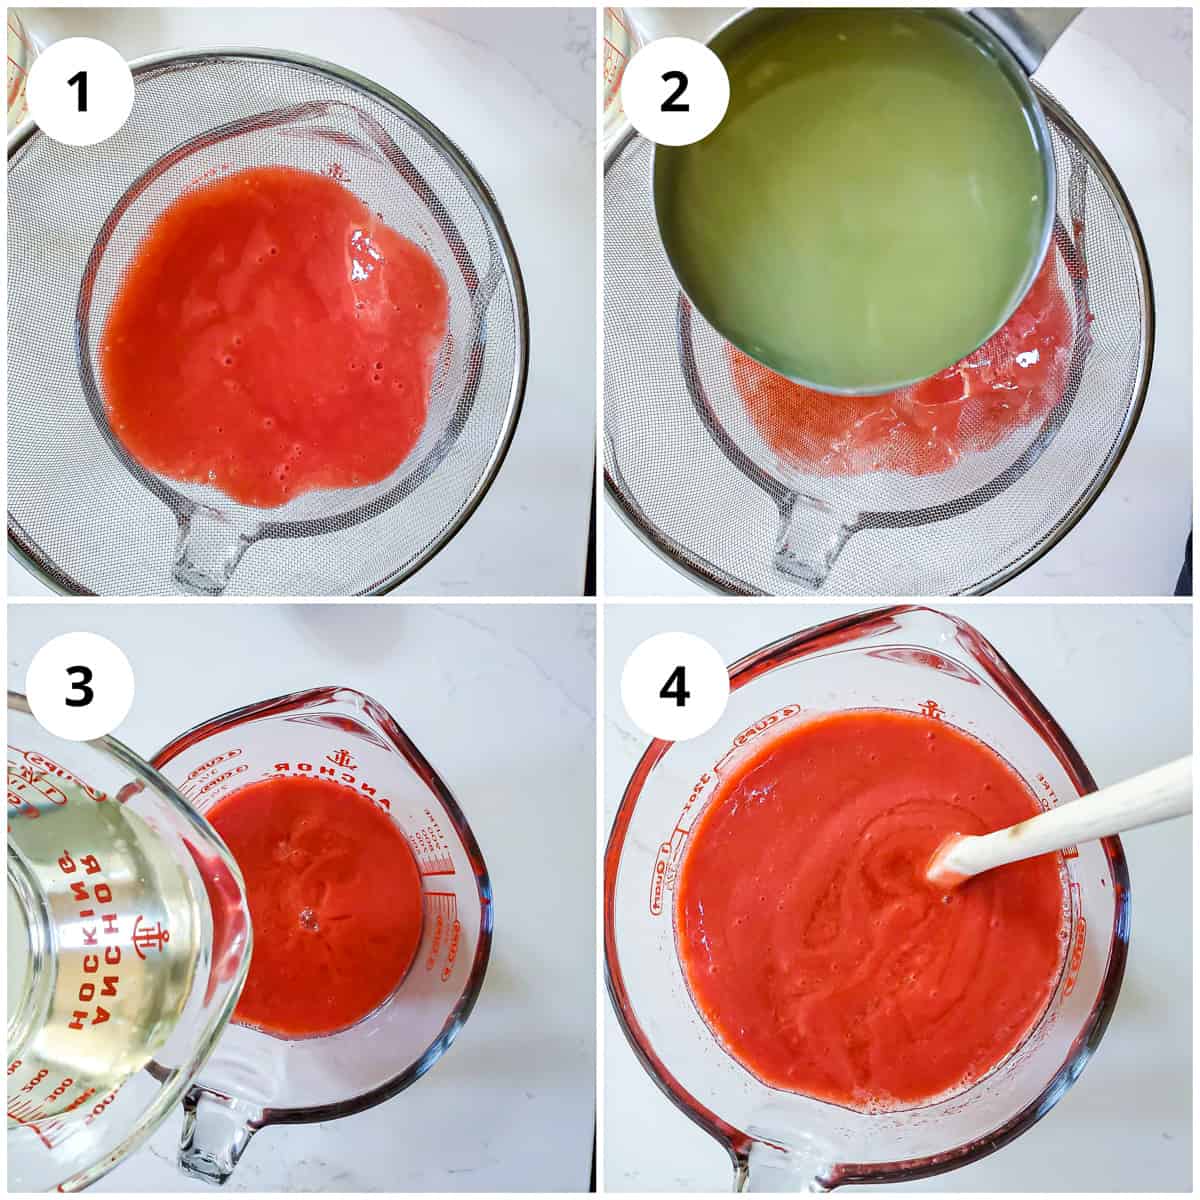 Four photos to show how to make the strawberry lemonade